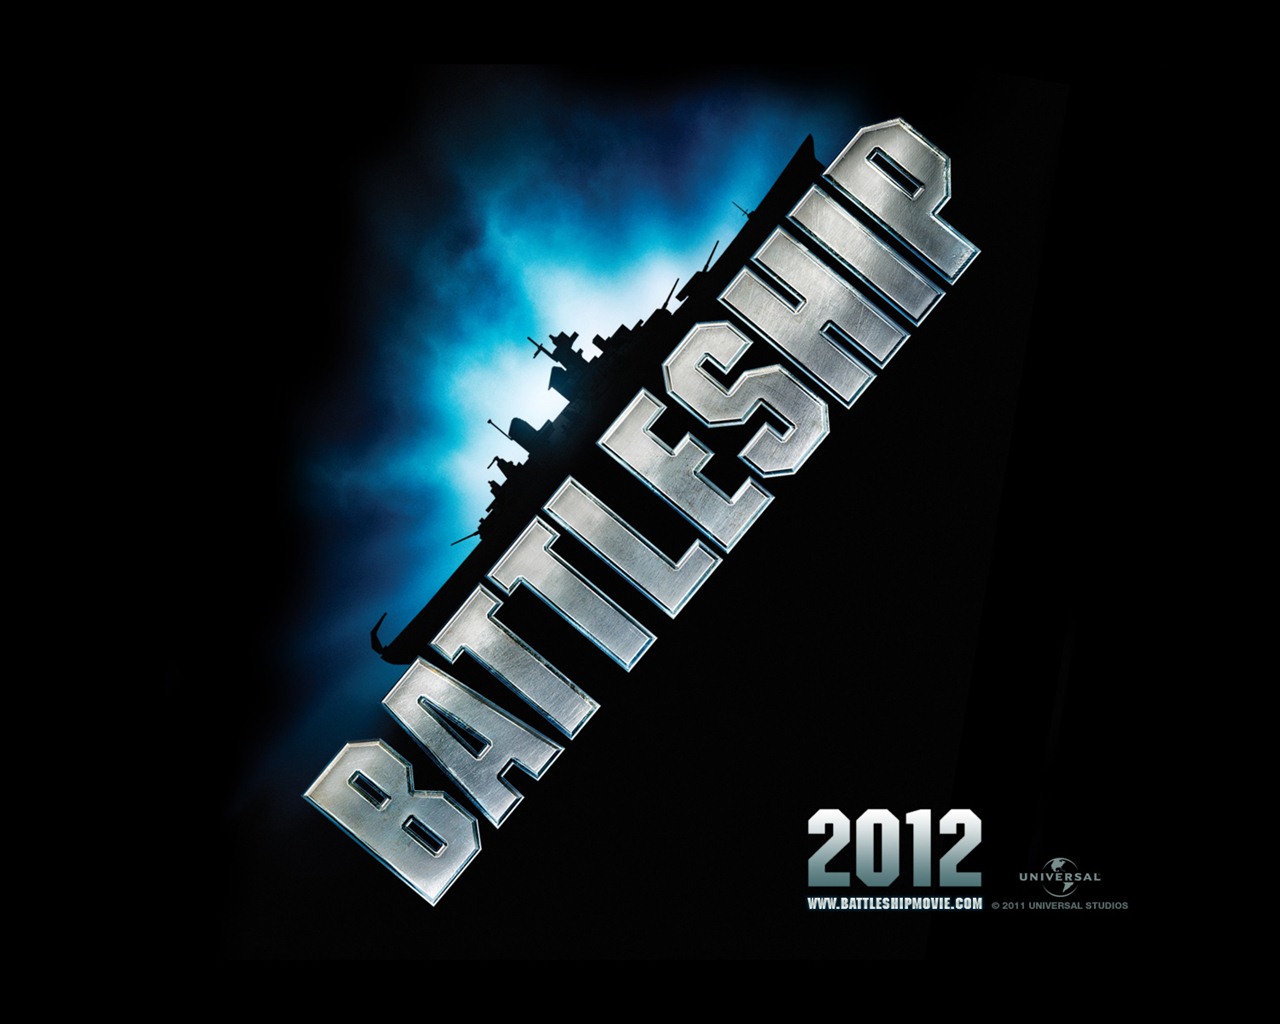 Battleship 2012 HD wallpapers #2 - 1280x1024